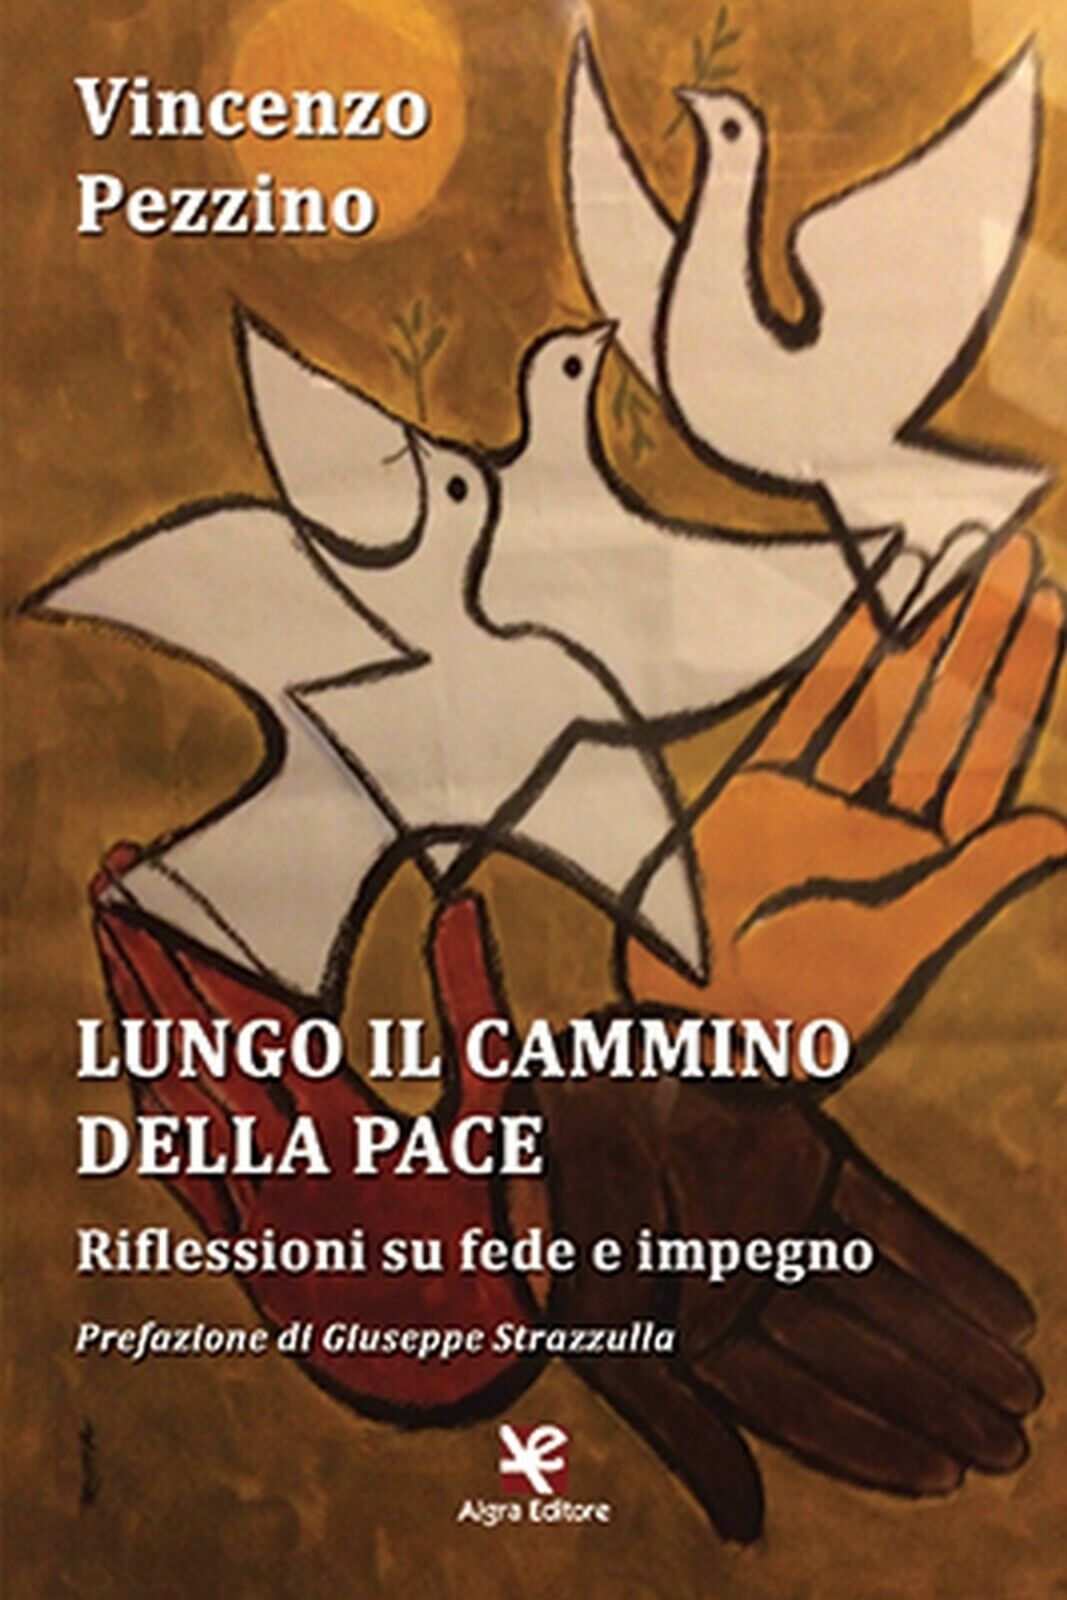 Lungo il cammino della pace  di Vincenzo Pezzino,  Algra Editore